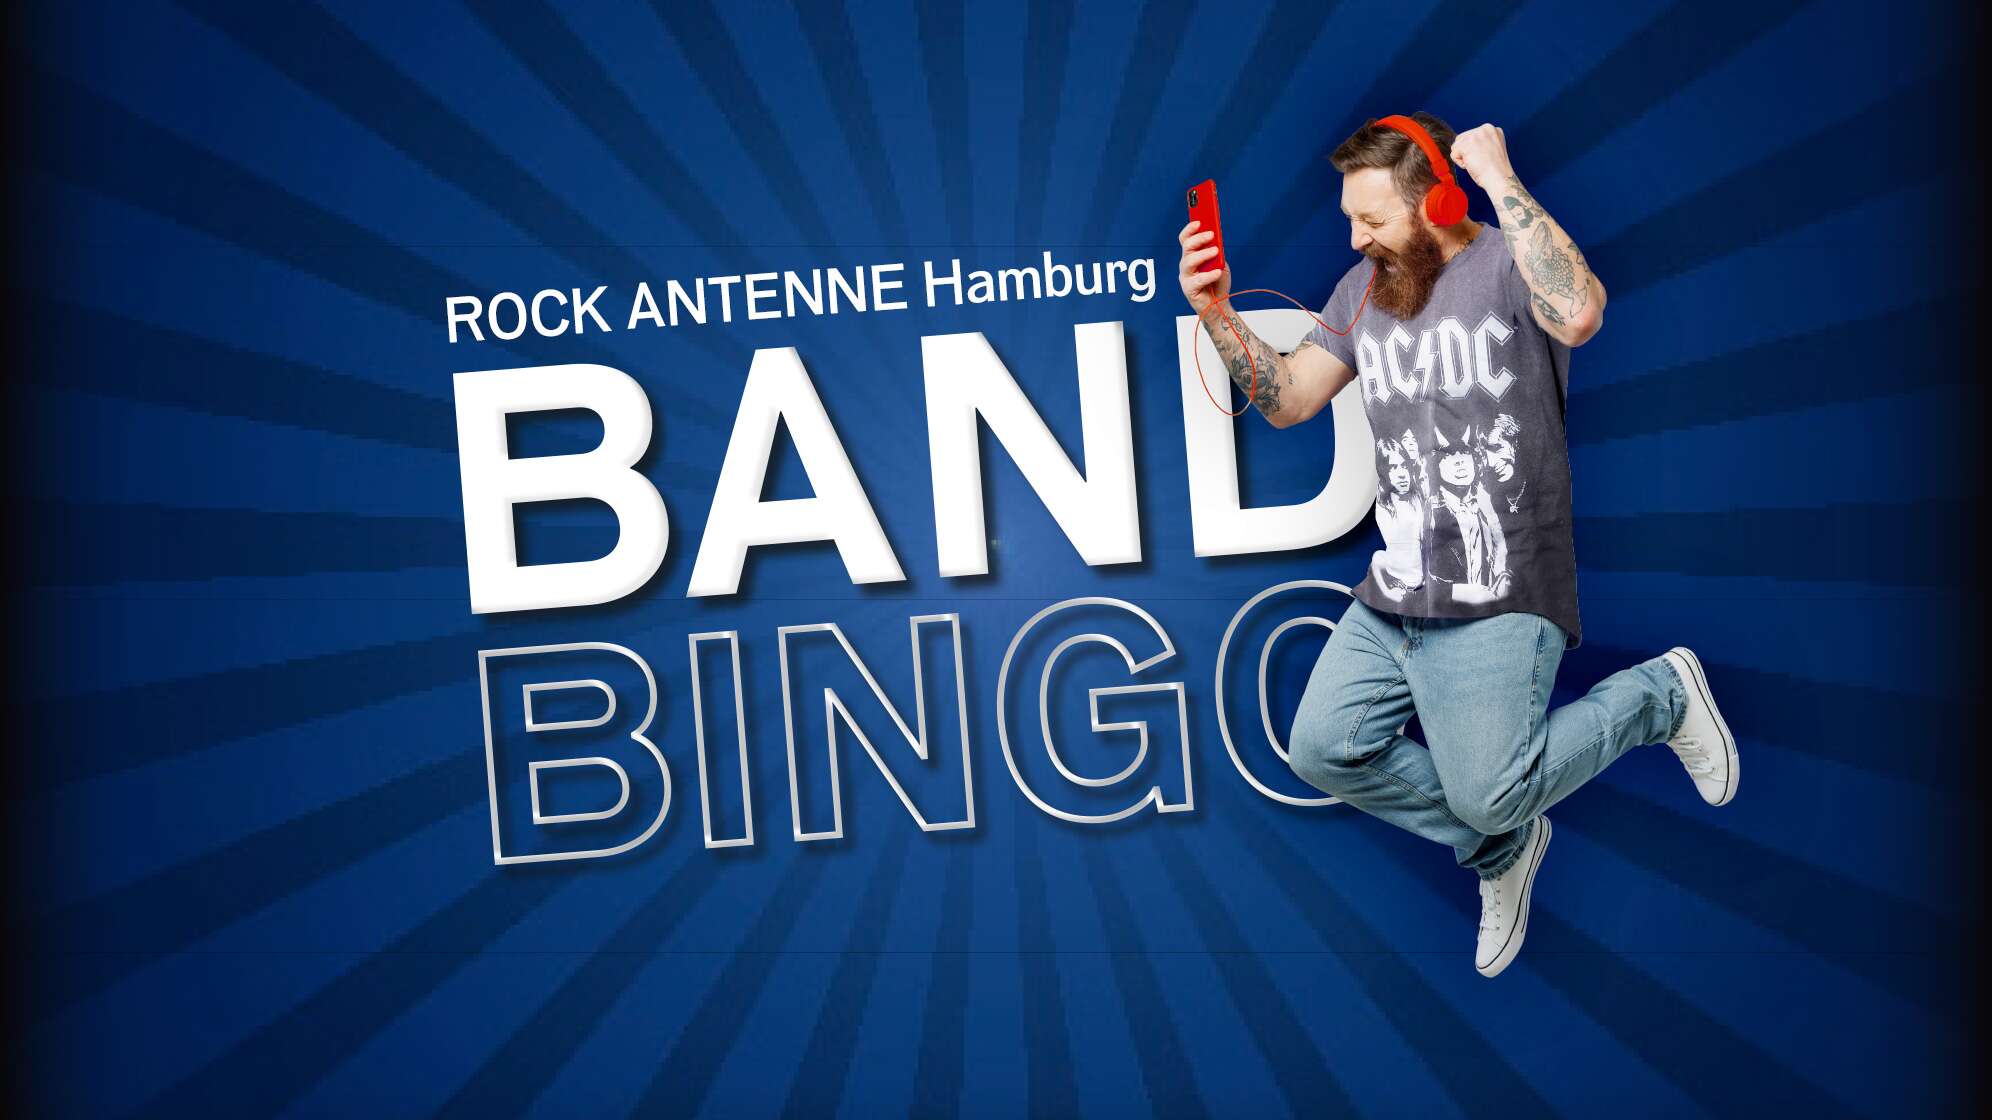 Ein jubelnder Mann mit AC/DC Shirt, Kopfhörern und Smartphone und dazu der Text "ROCK ANTENNE Hamburg Band Bingo"